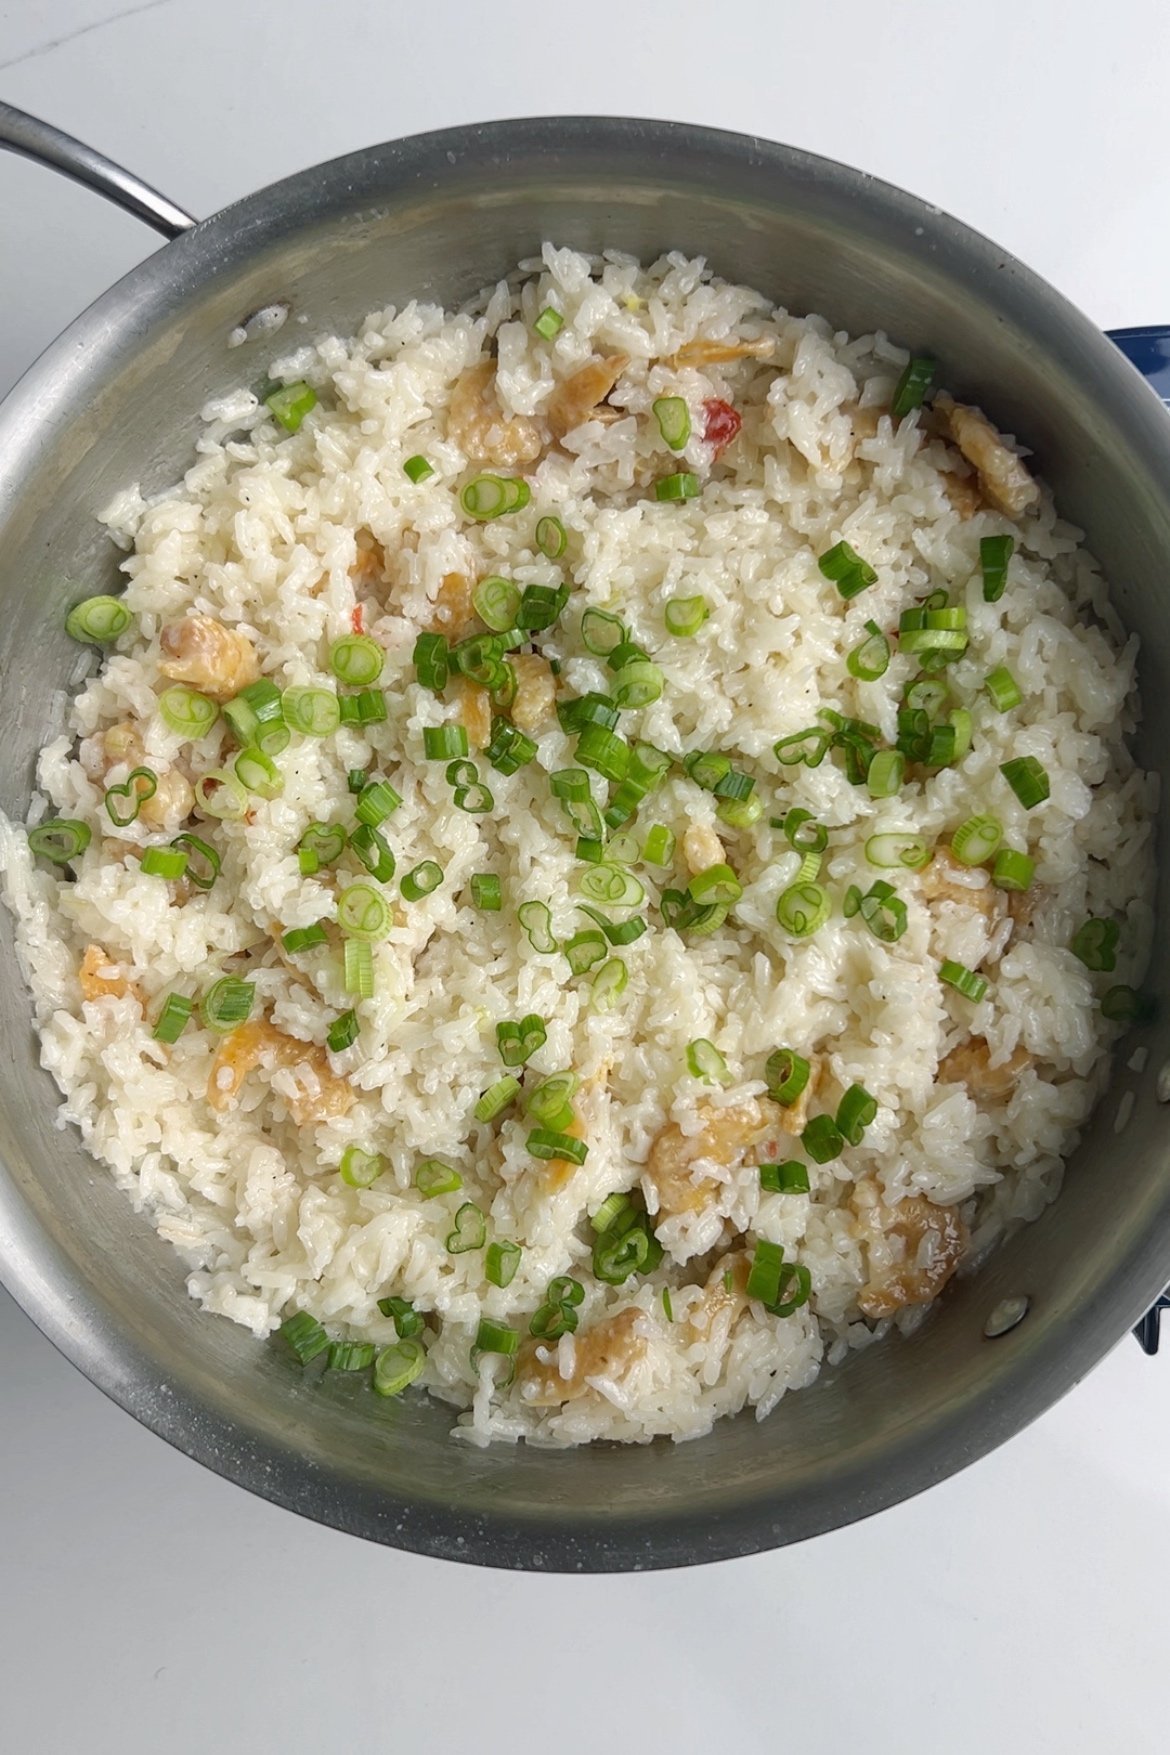 Adding scallion to the shine rice